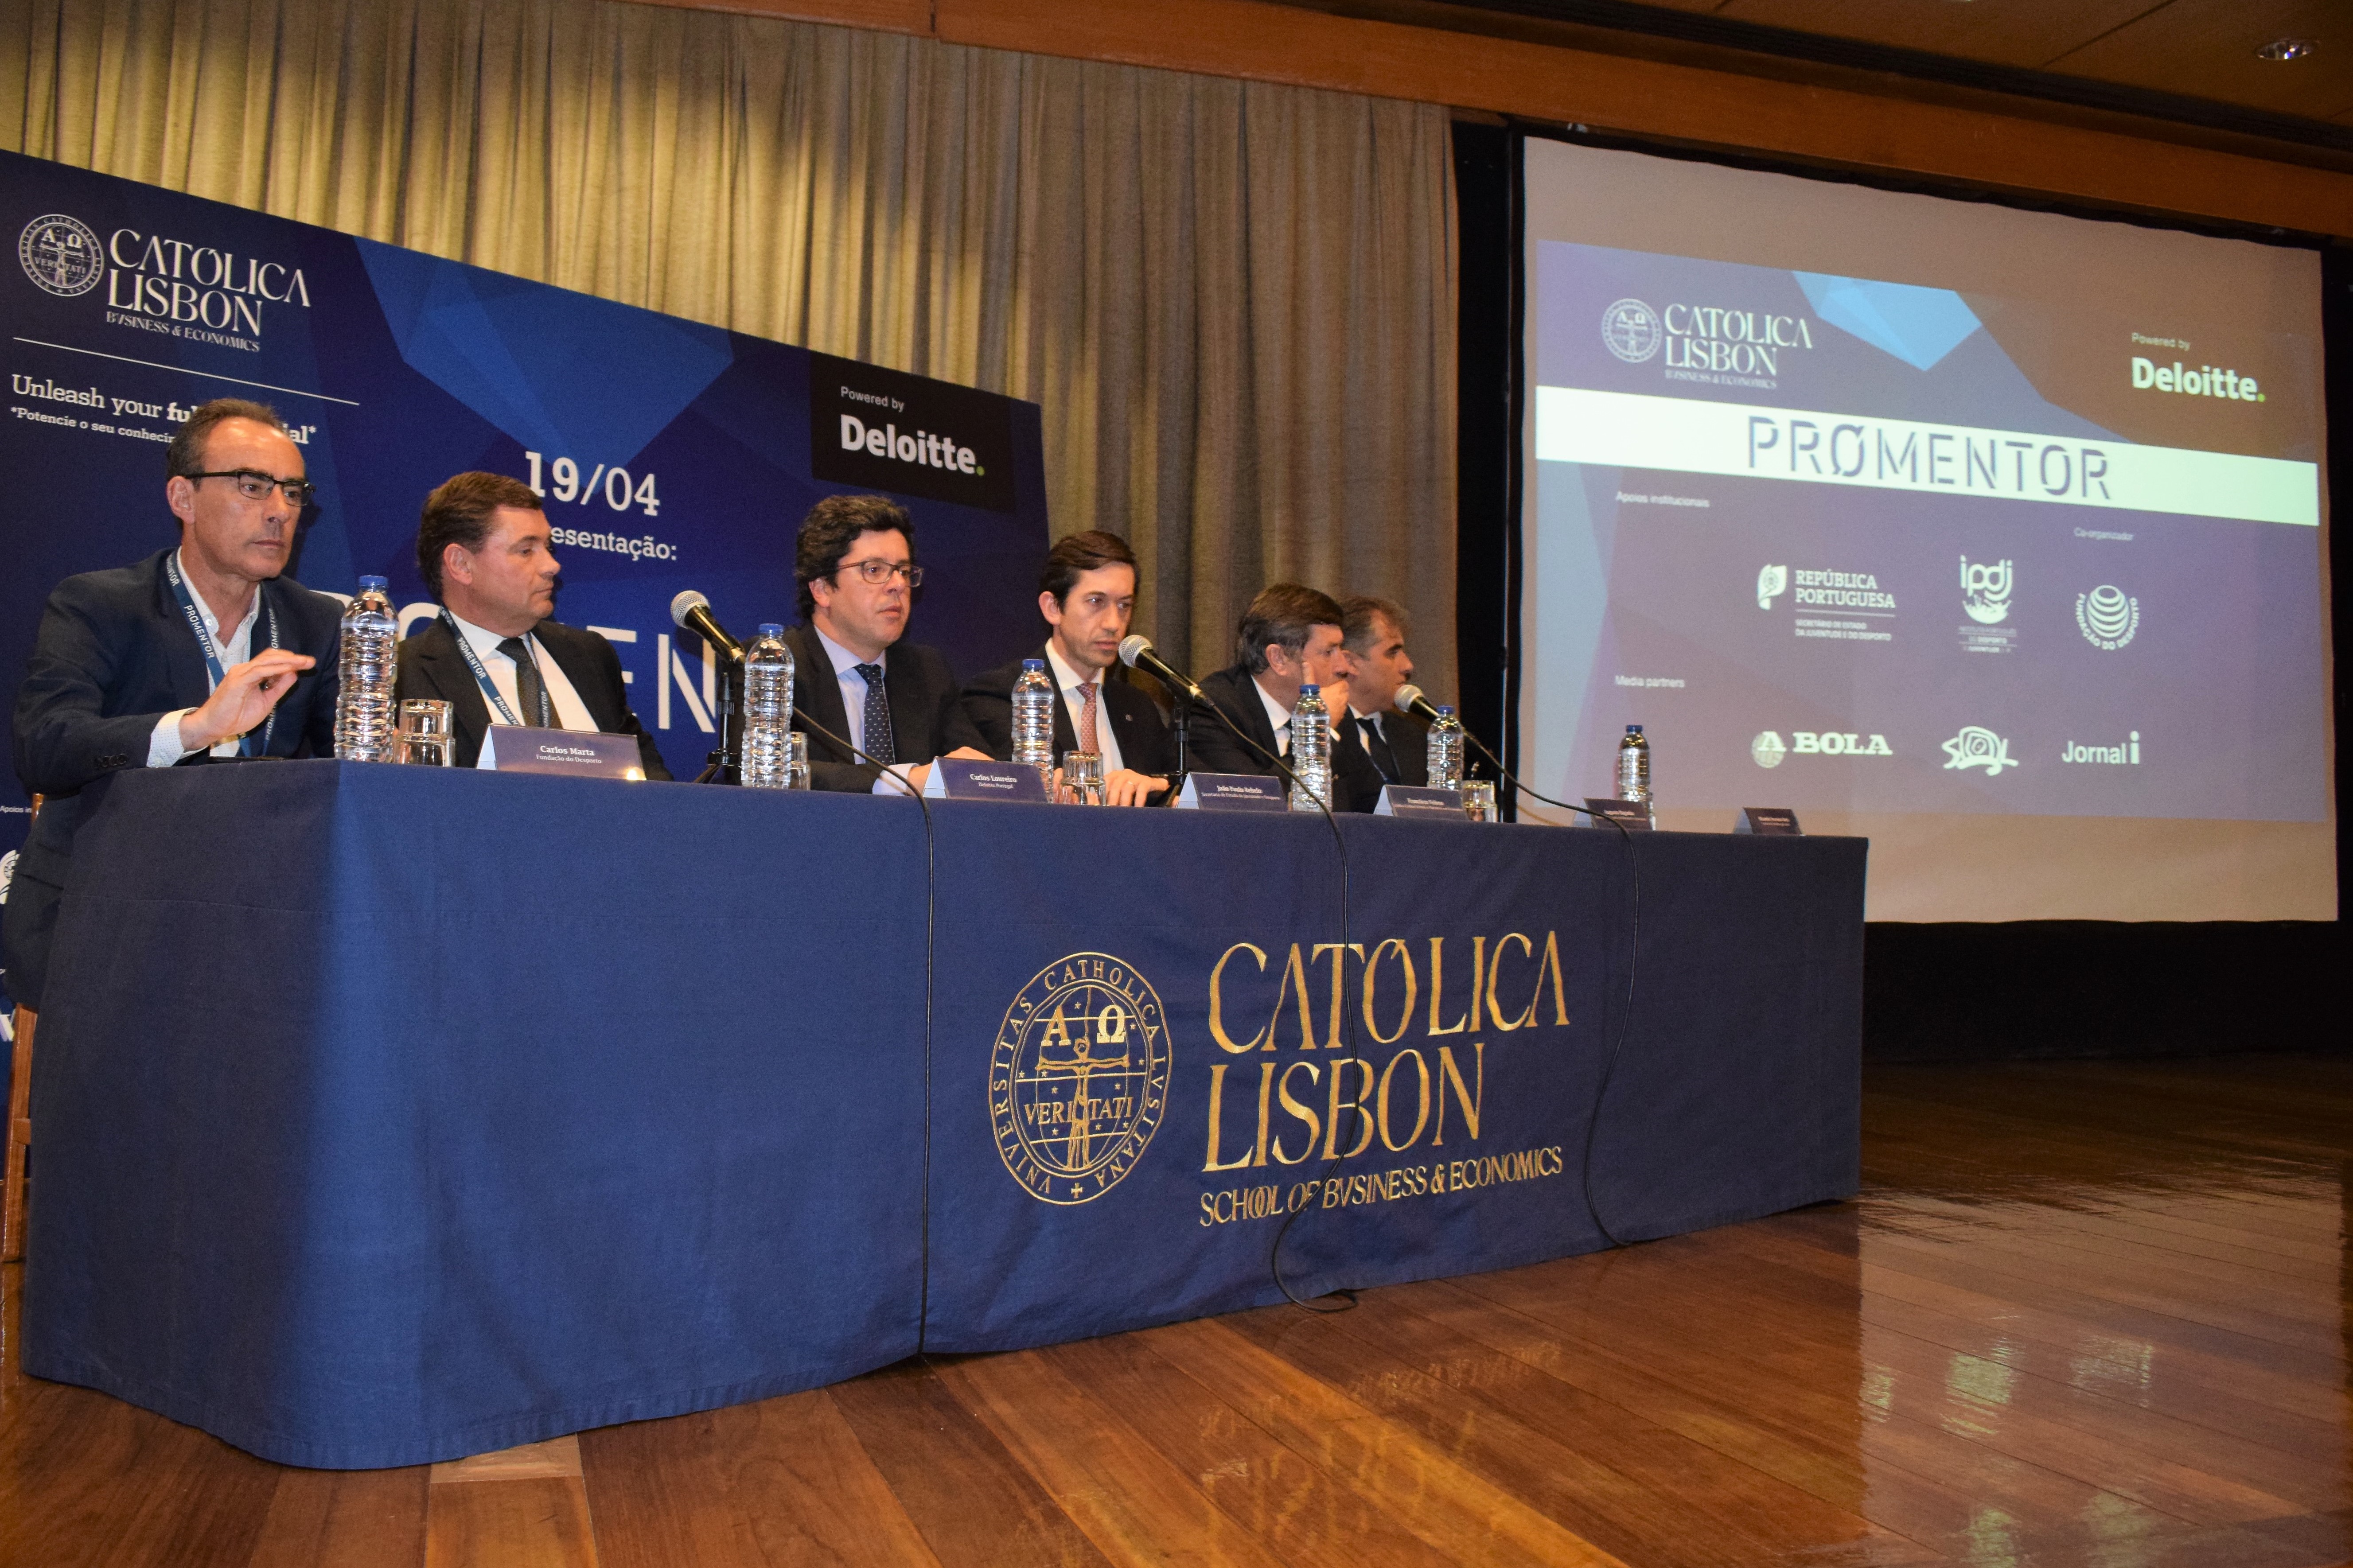 Fundação do Desporto, Católica Lisbon School of Business & Economics e Deloitte apresentam PROMENTOR DESPORTO